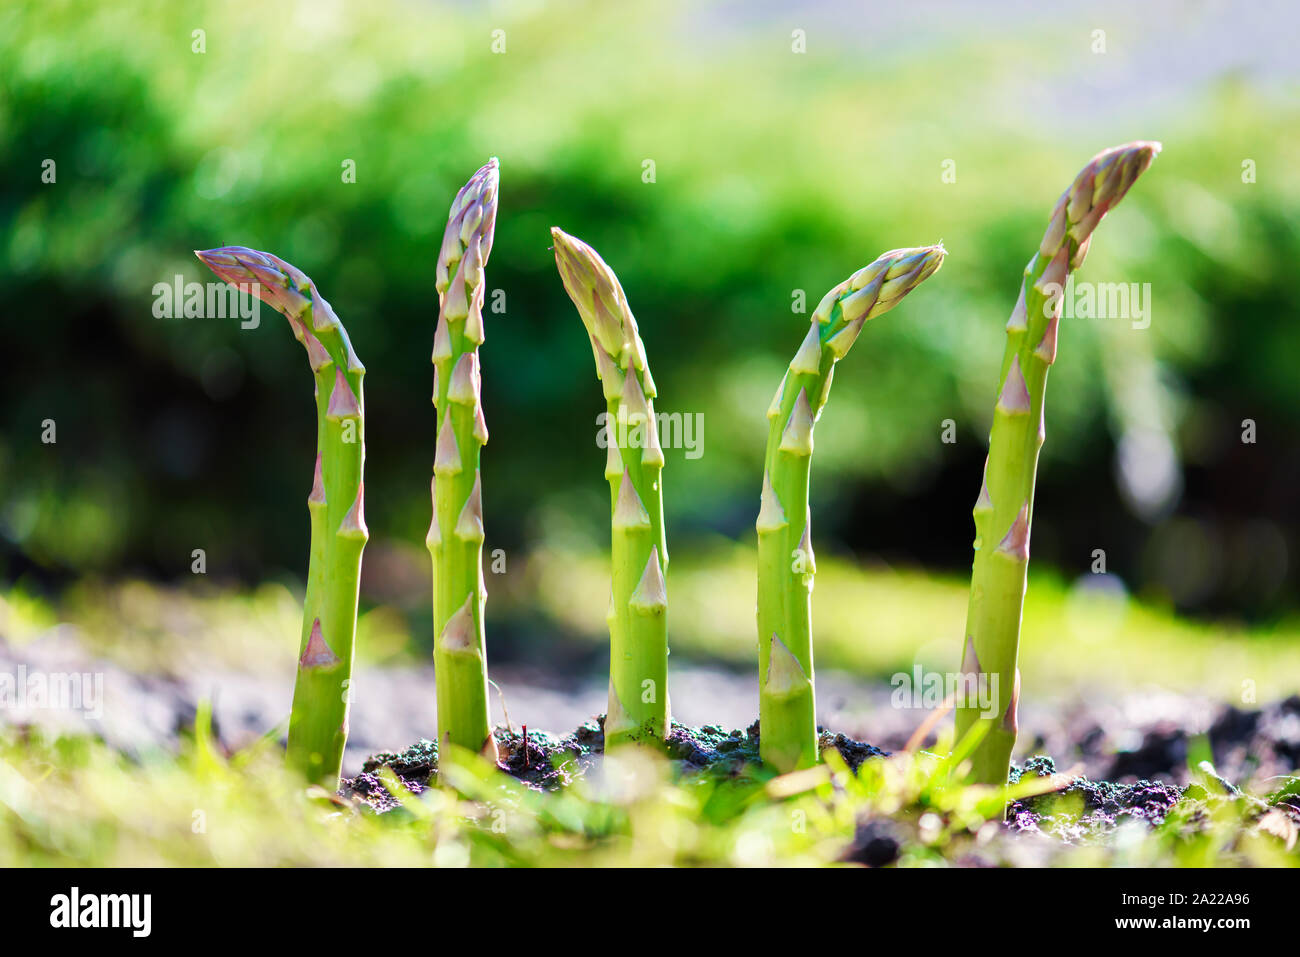 Les jeunes pousses d'asperges vertes en croissance jardin libre. La photographie alimentaire Banque D'Images